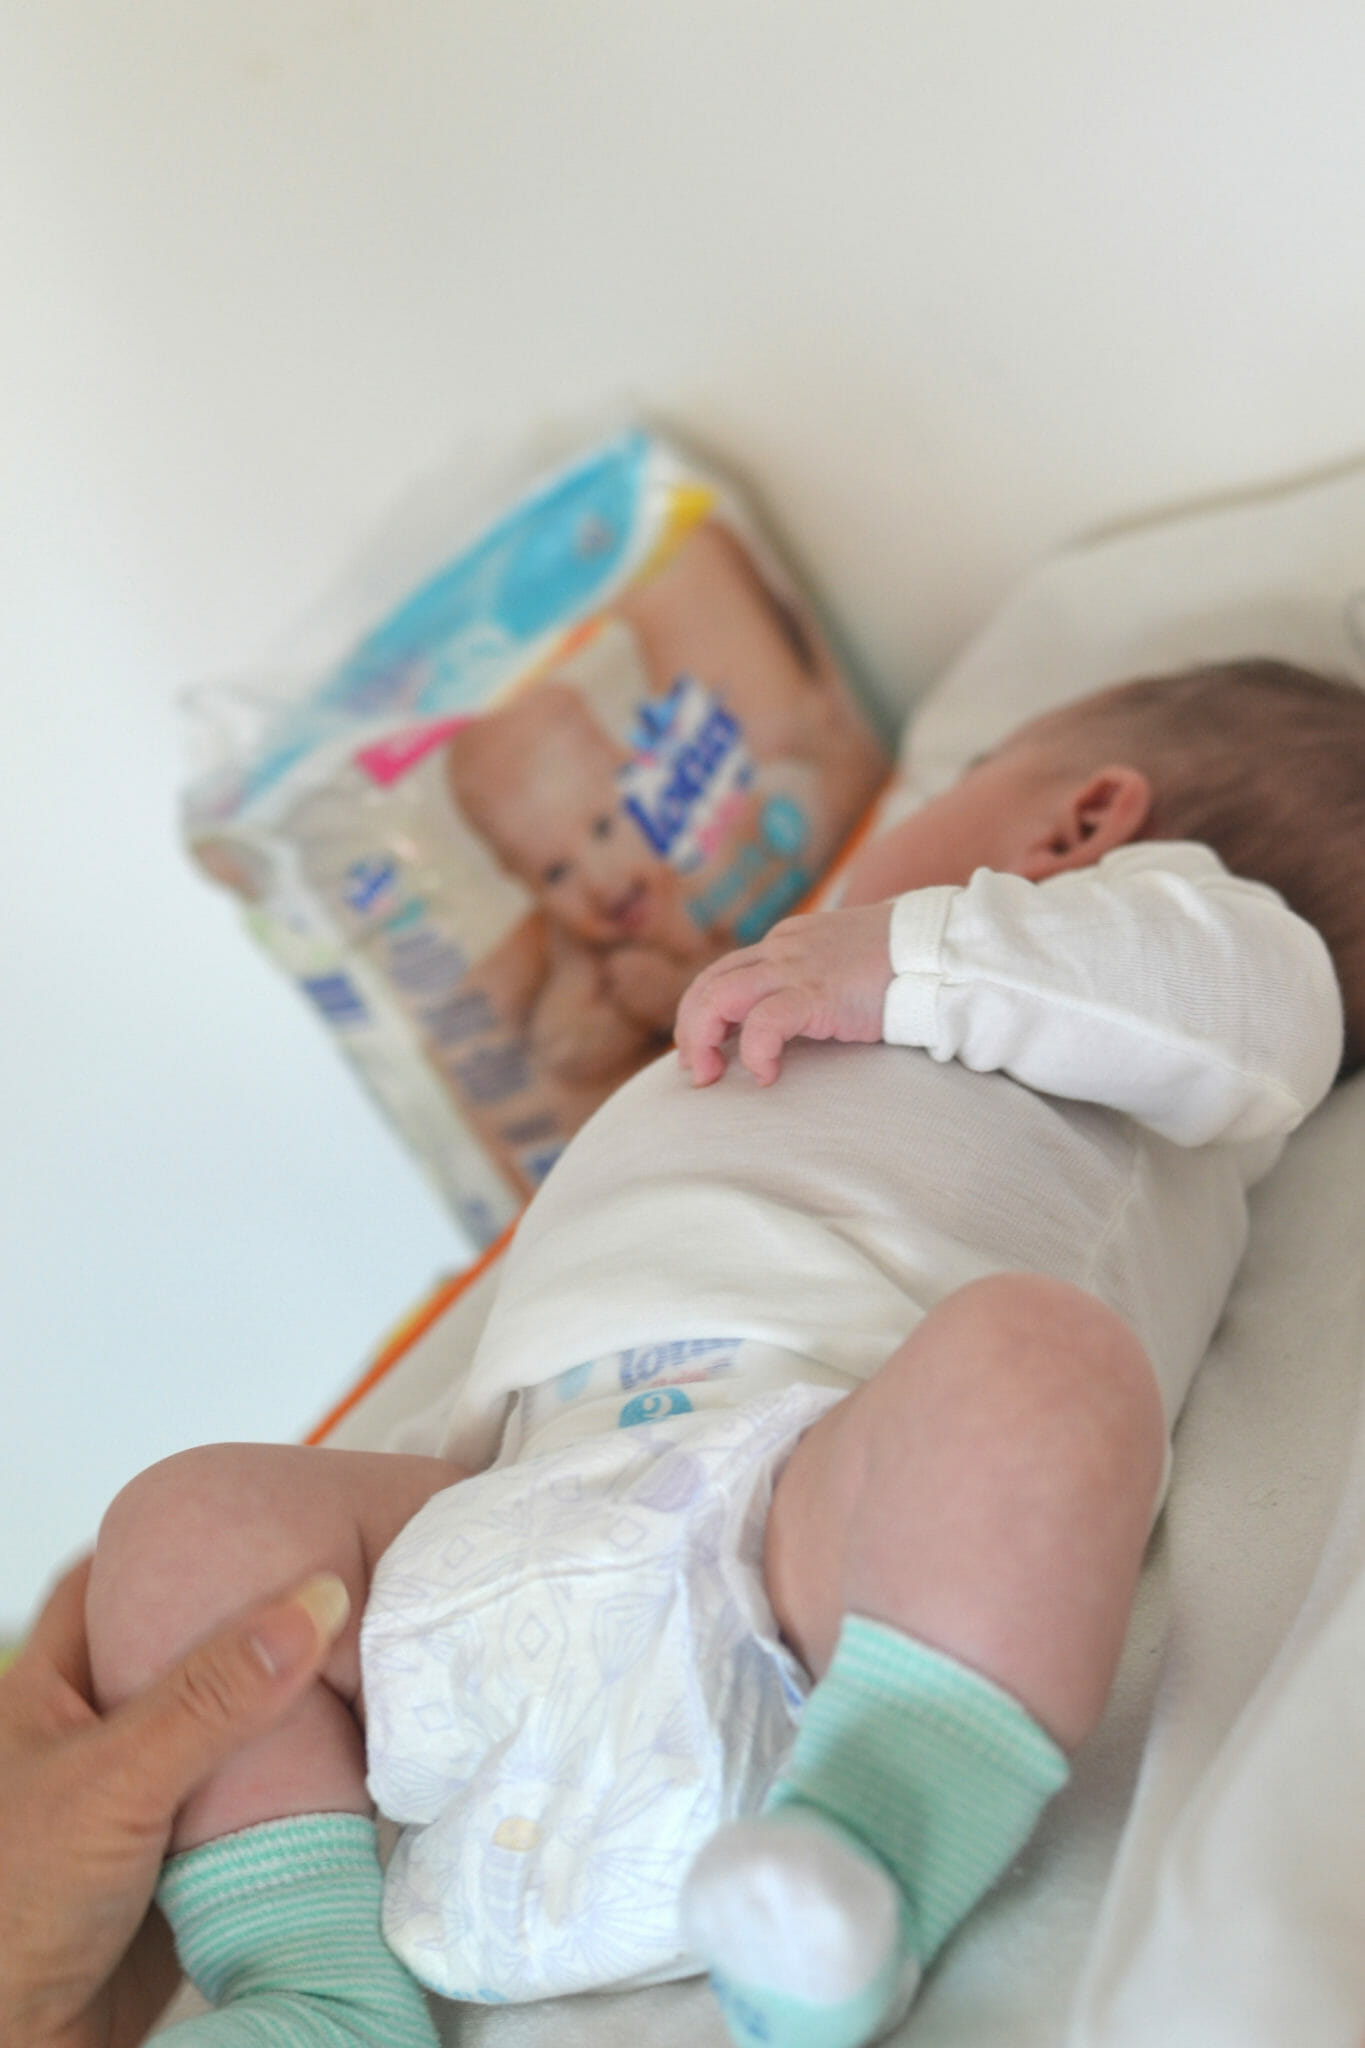 Couches culottes bébé taille 4 : 9 - 14kg douceur naturelle LOTUS BABY : le  paquet de 32 couches culottes à Prix Carrefour